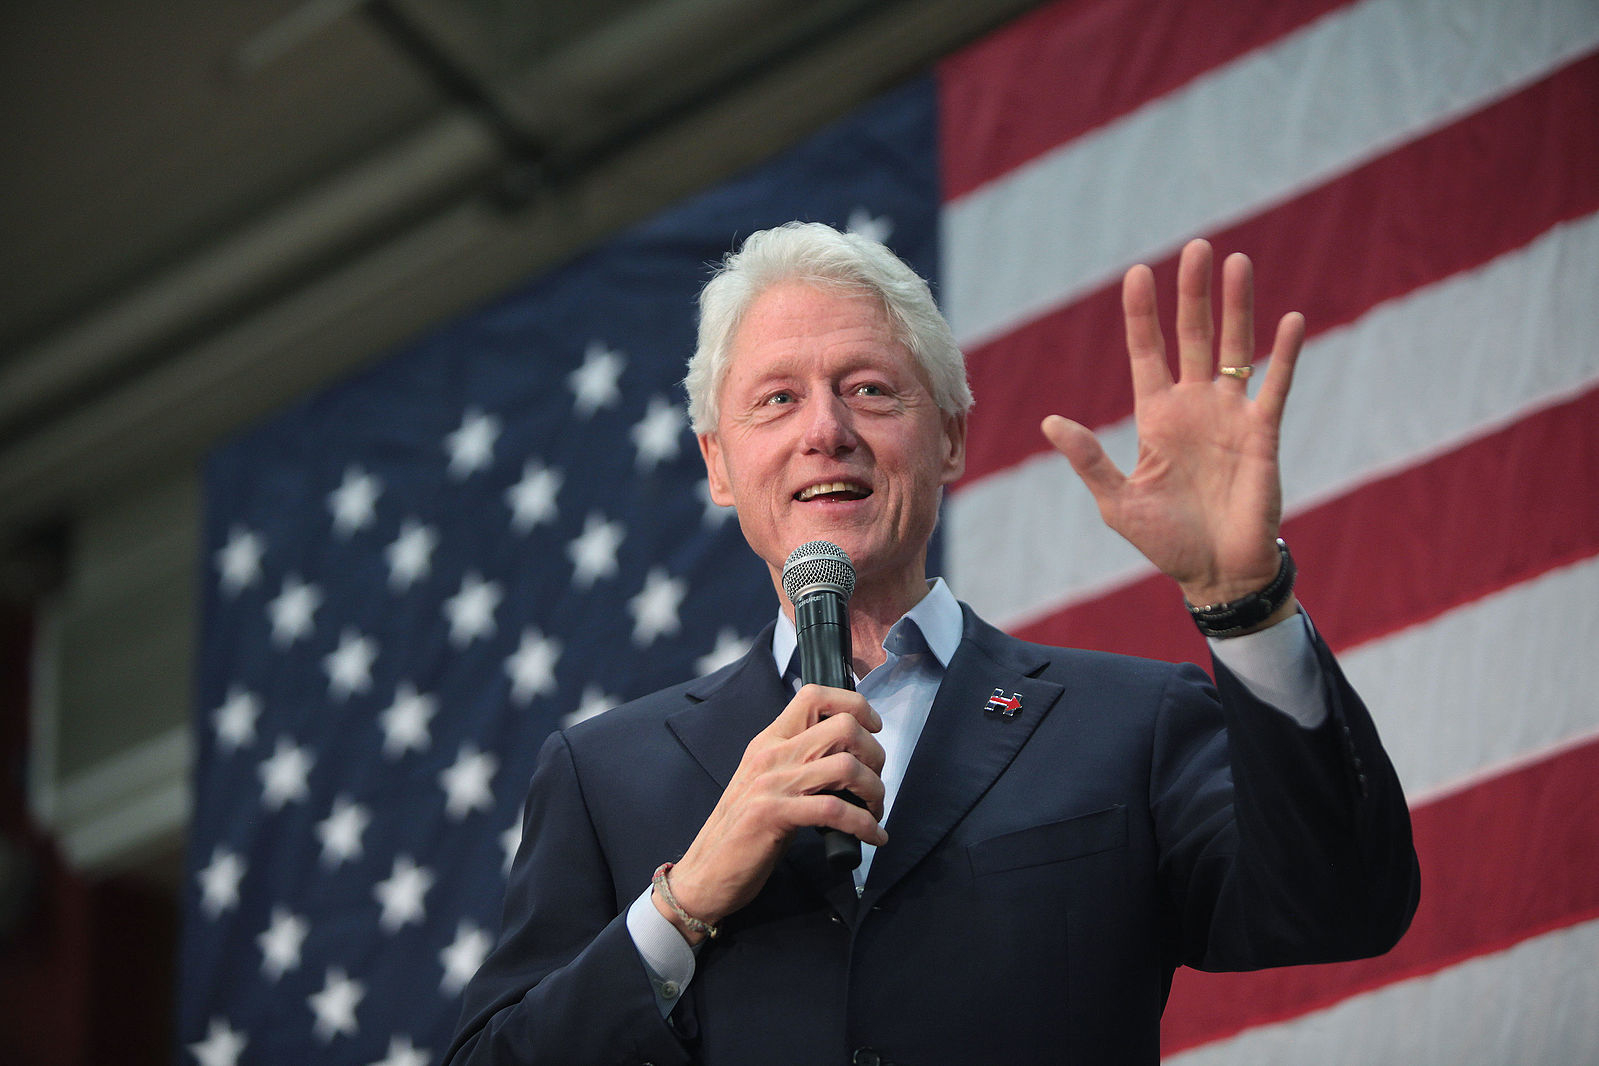 Билл Клинтон: биография, достижения и политическая карьера